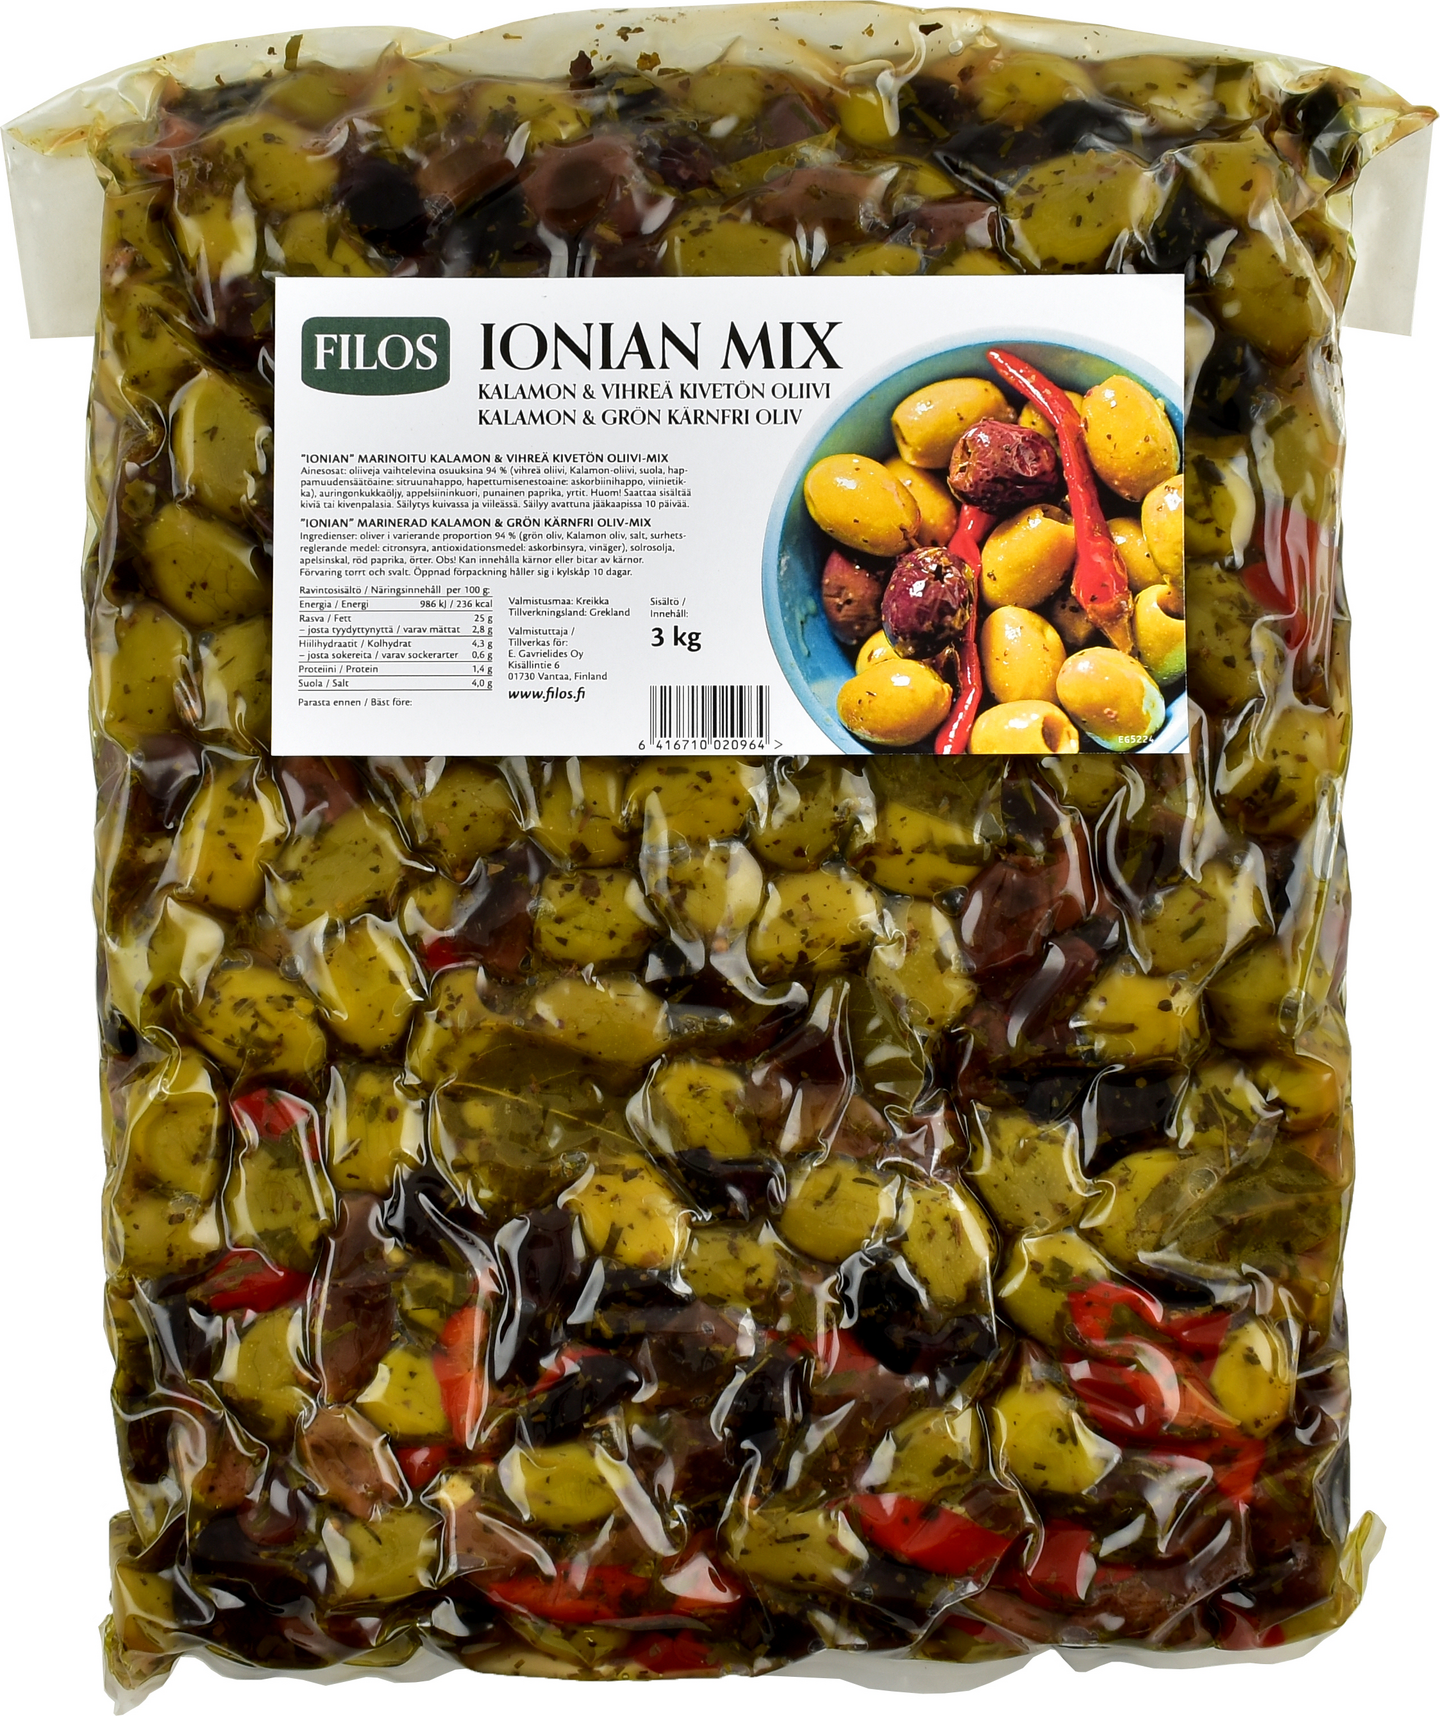 Filos Ionian marinoitu Kalamon & vihreä oliivi-mix kivetön 3kg